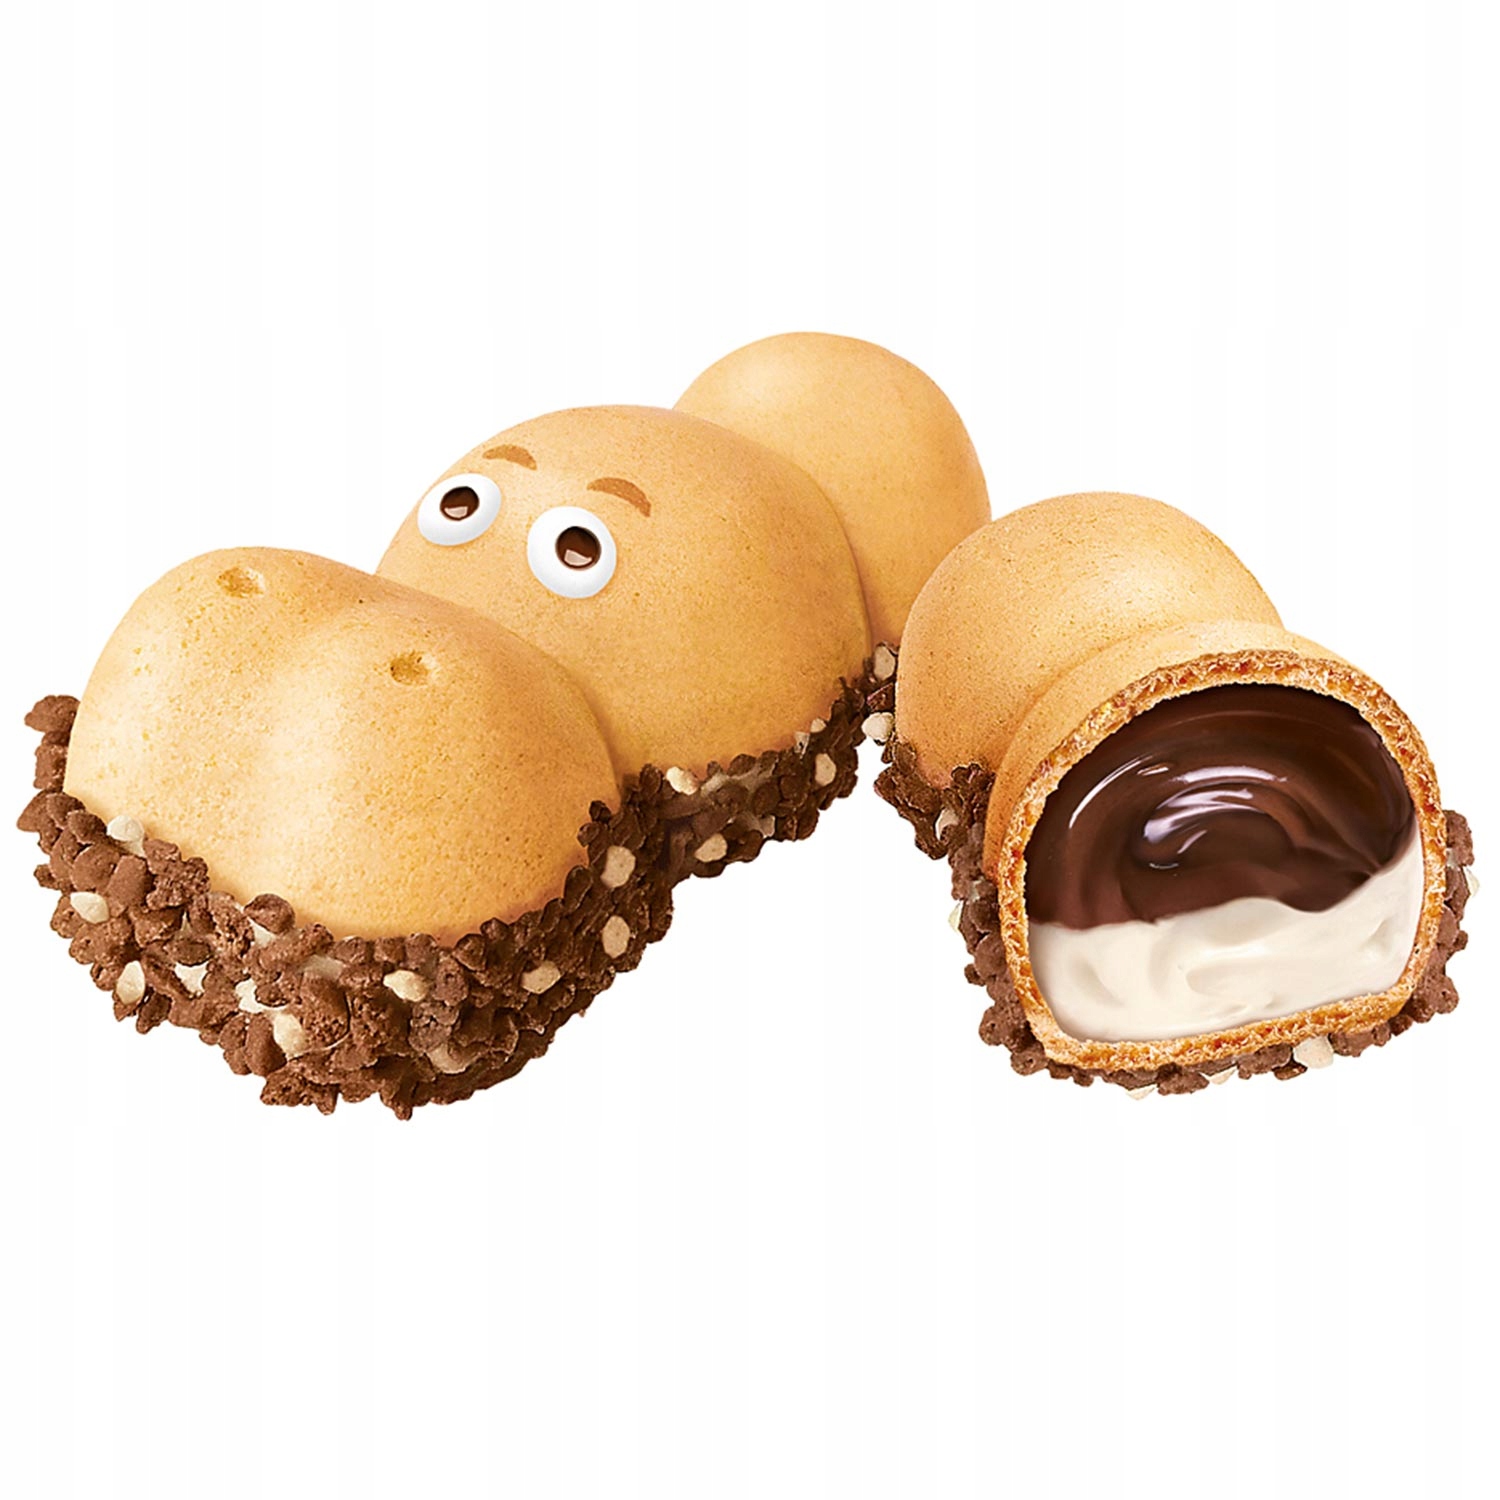 Batoniki Kinder Happy Hippo Cacao 28 szt z Niemiec